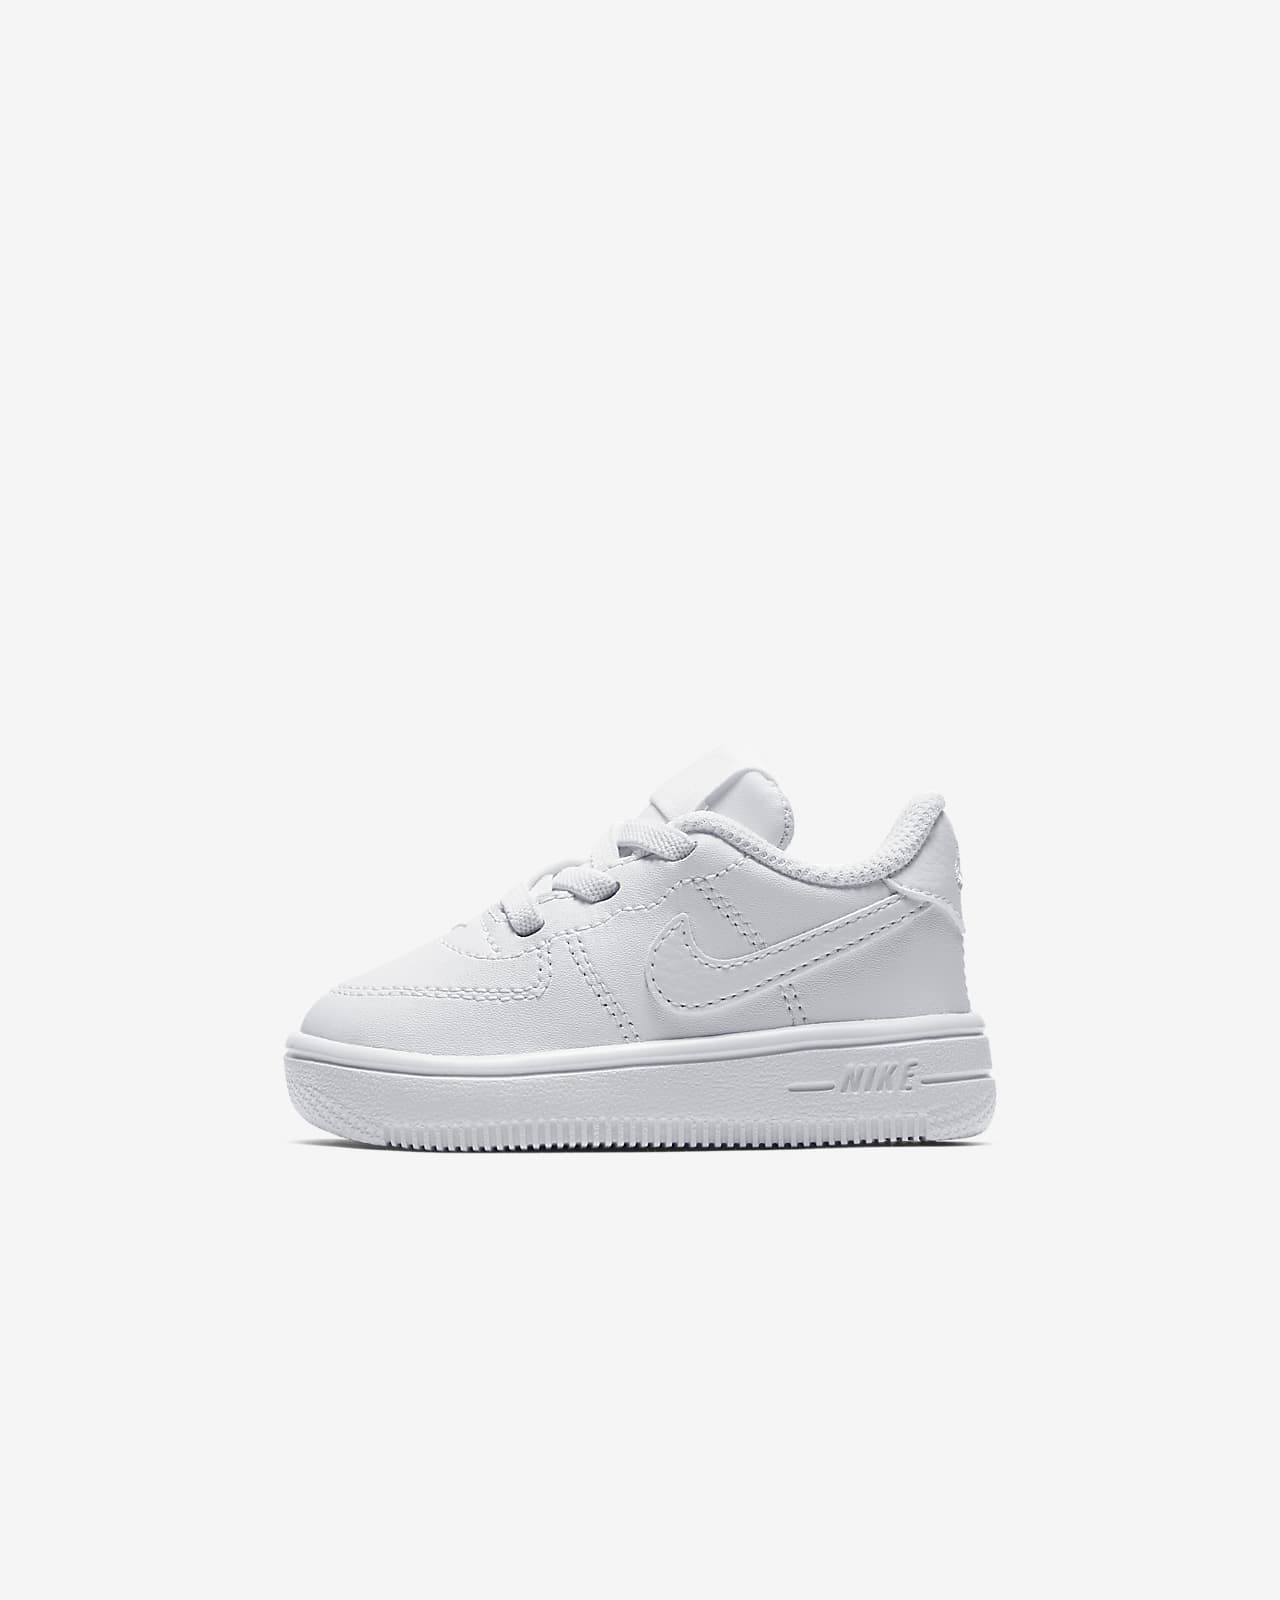 Nike Force 1 '18 Infant/Toddler Shoe